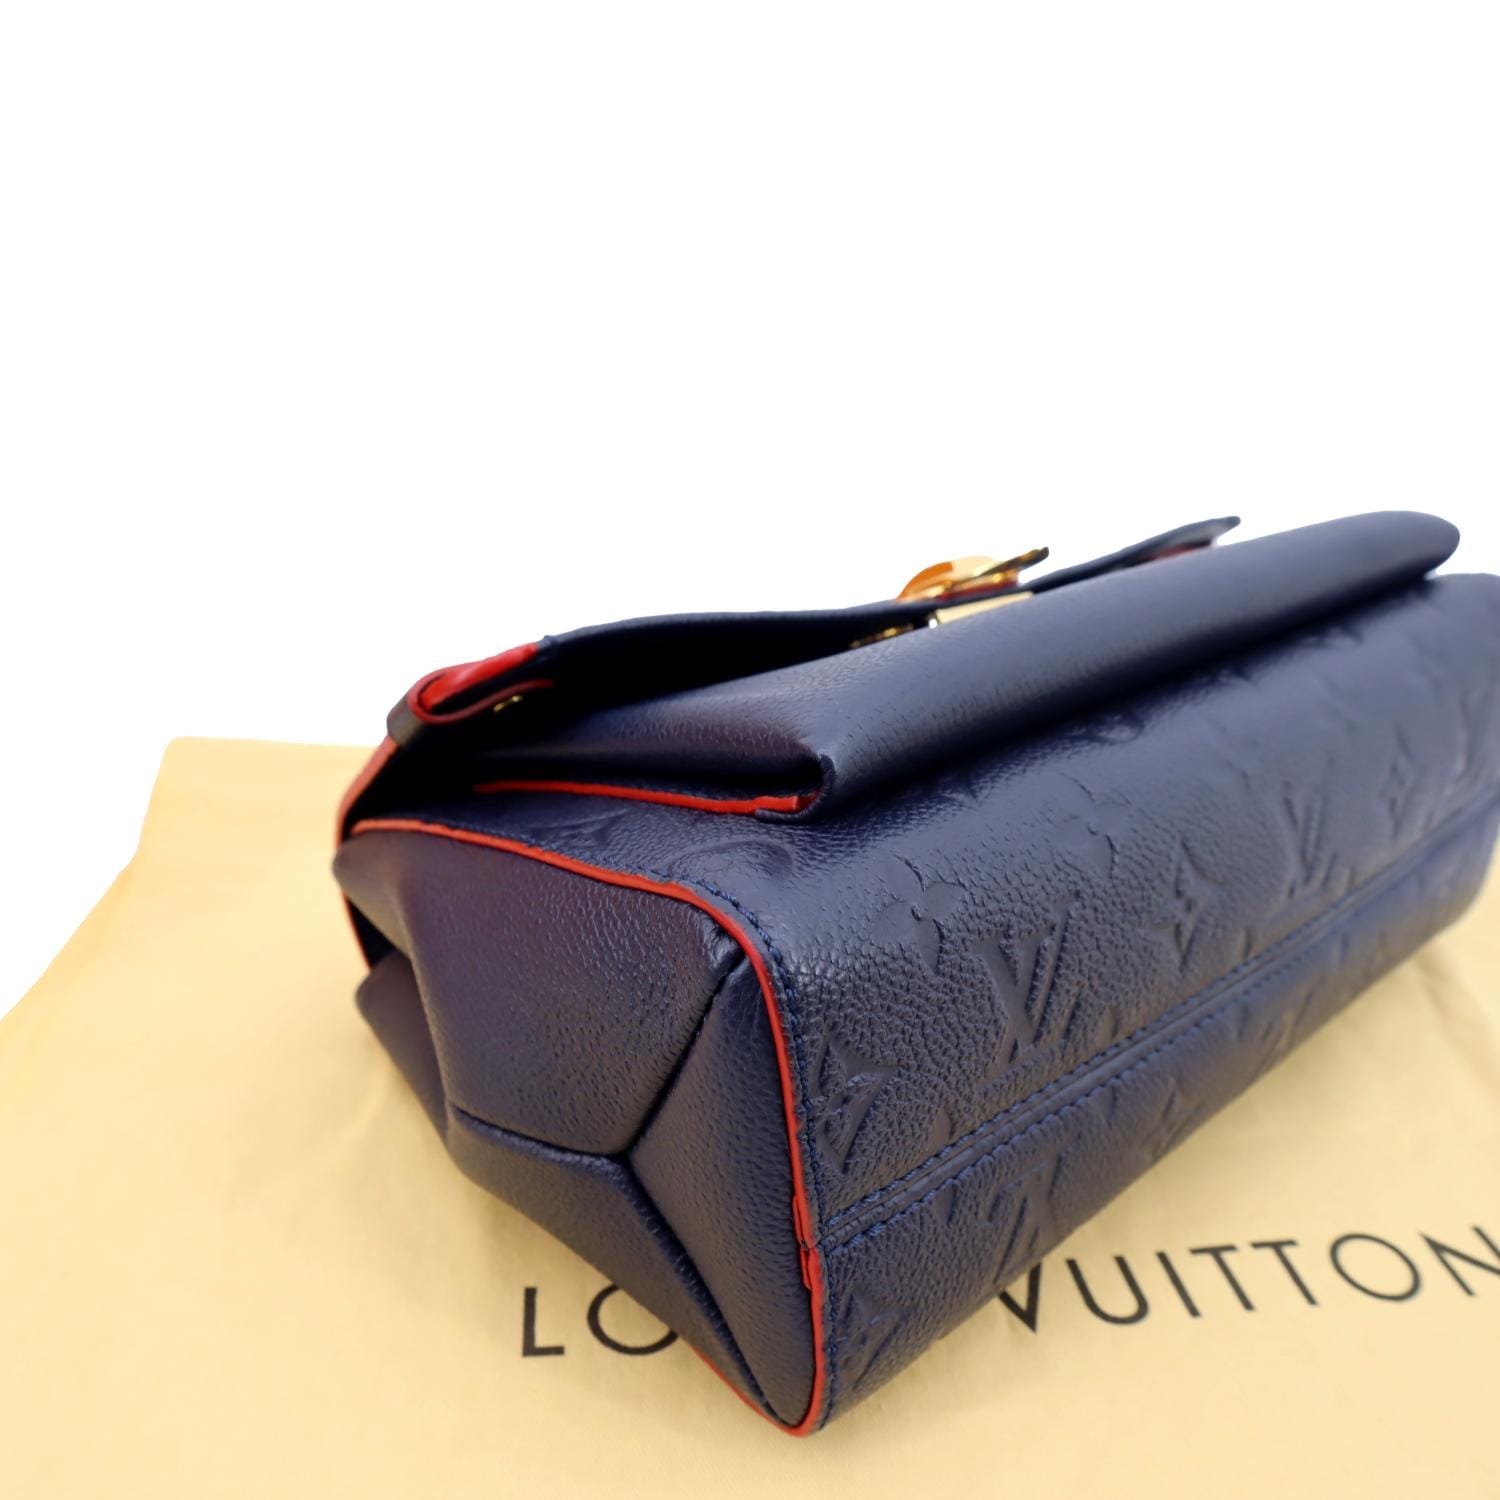 LOUIS VUITTON Vavin PM Monogram Empreinte Leather Shoulder Bag Blue